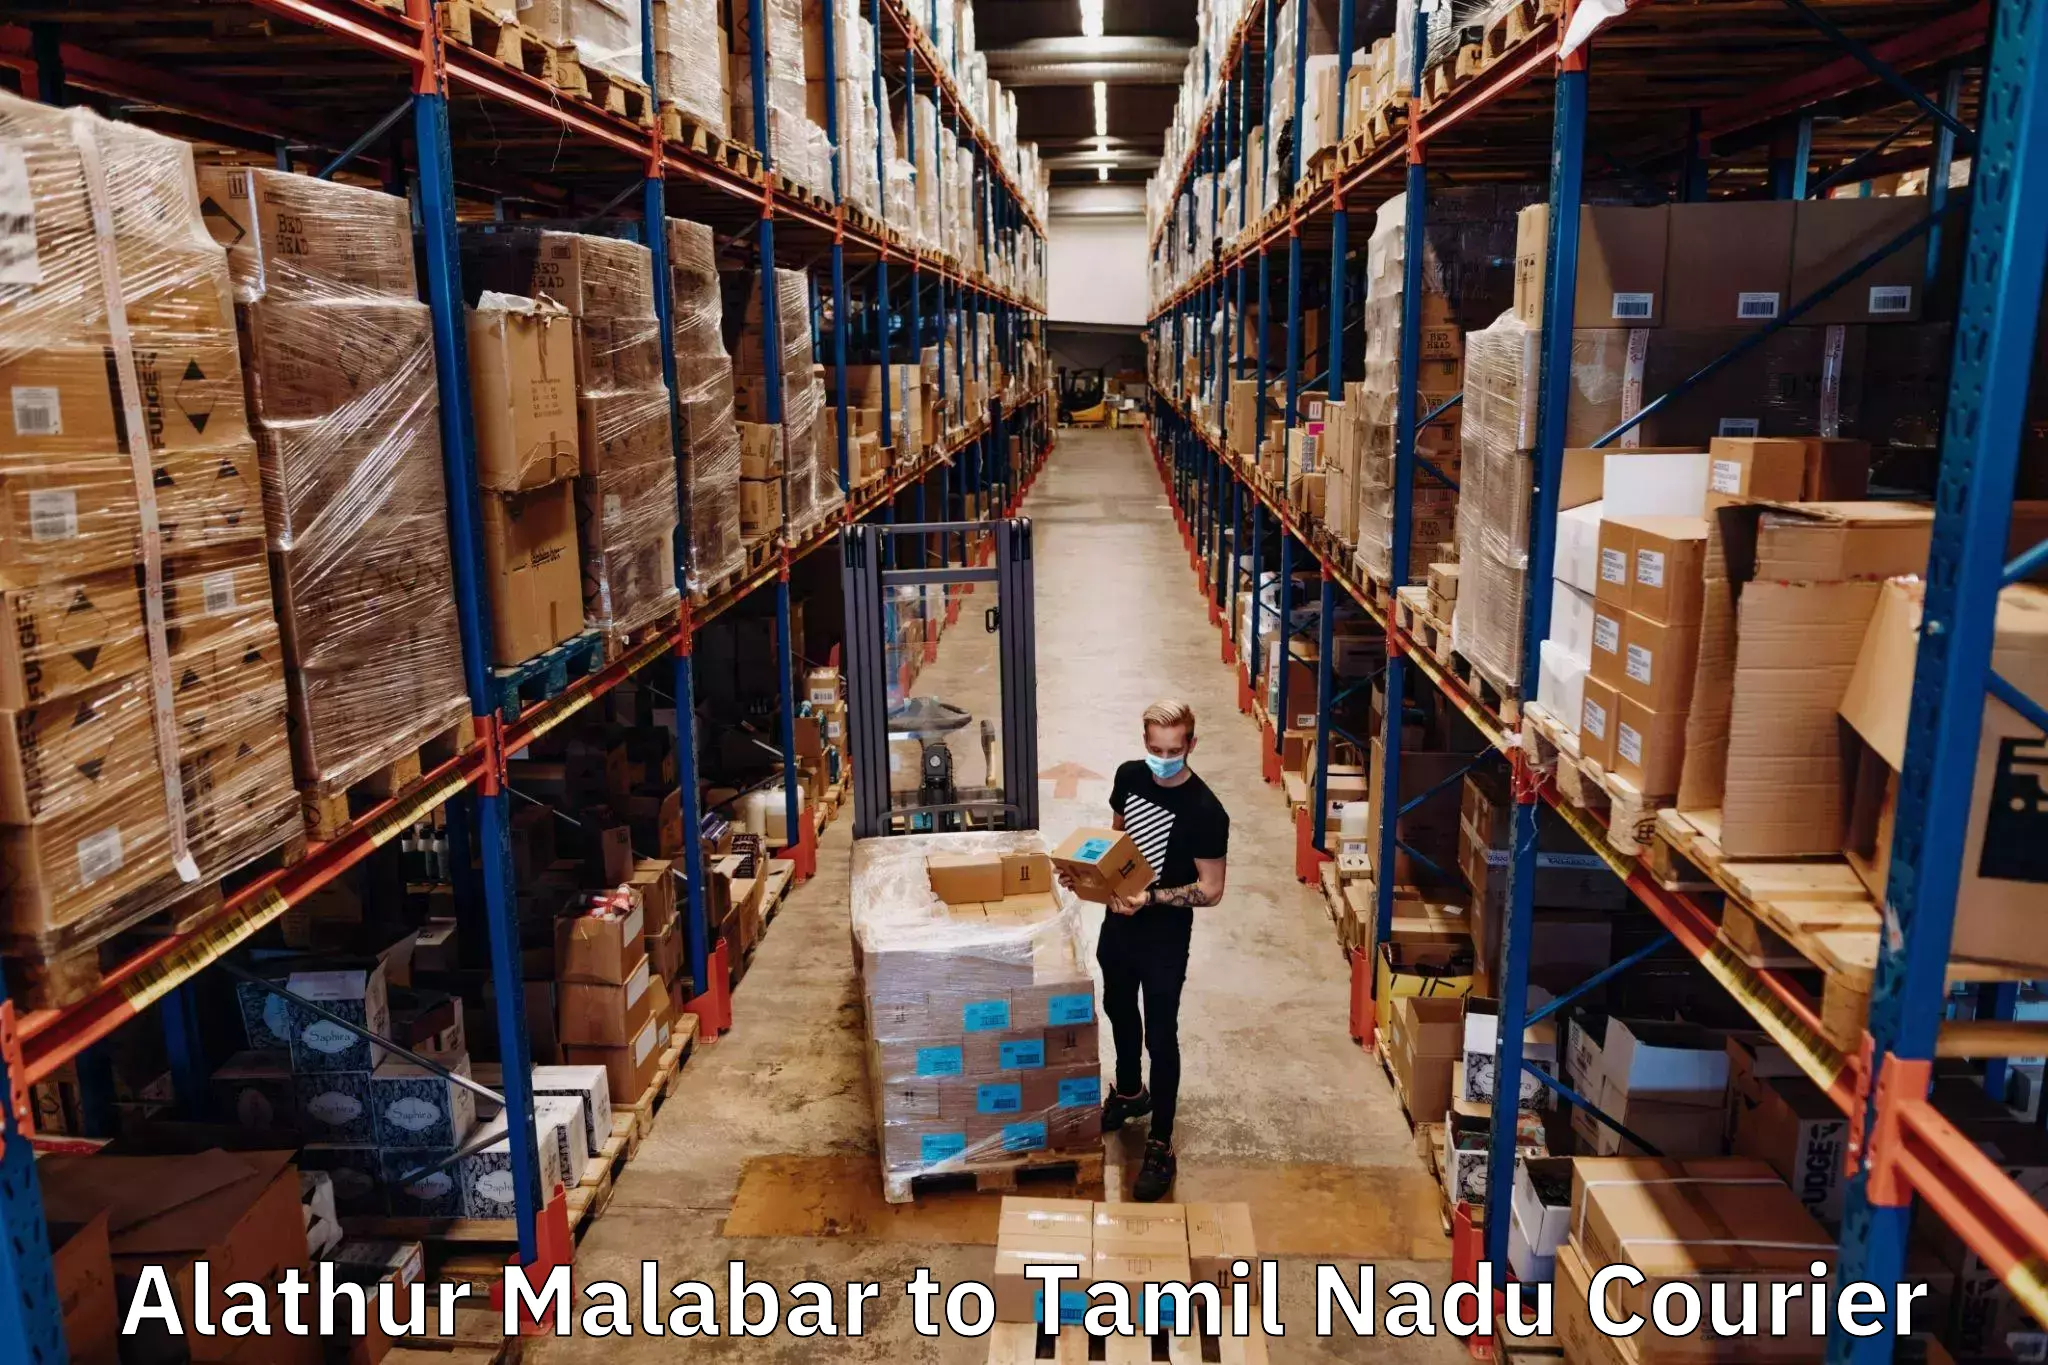 Next-generation courier services Alathur Malabar to Tiruchirappalli